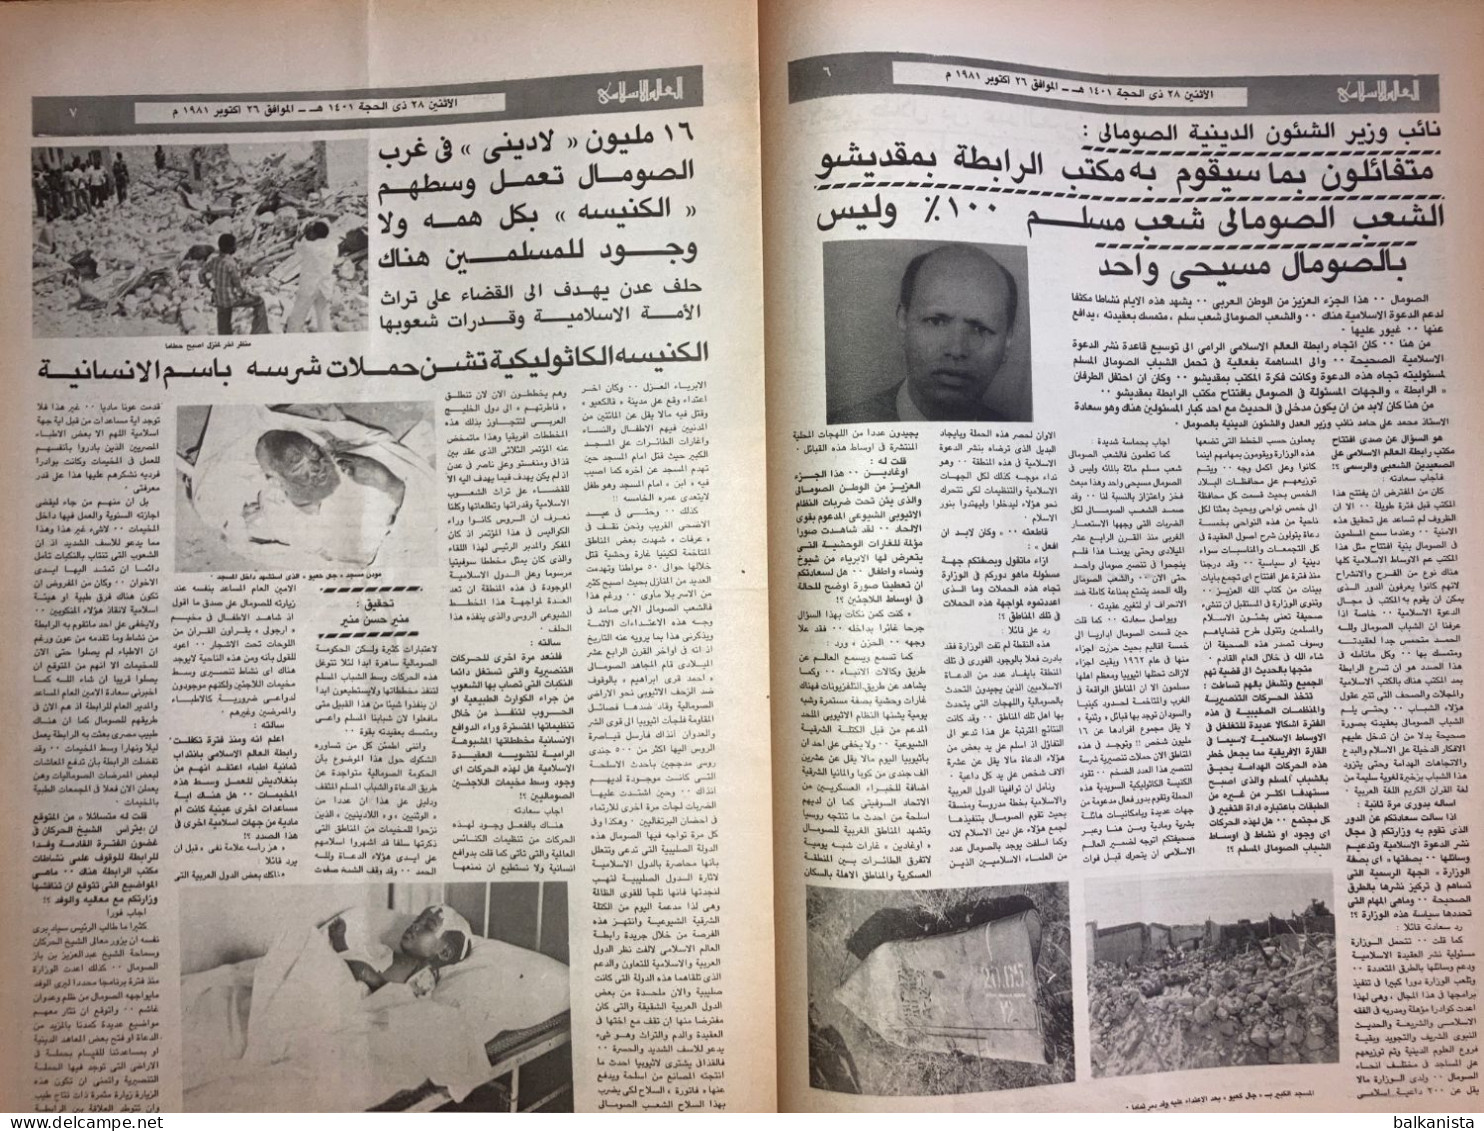 Saudi Arabia Akhbar Al-Alam Al-Islami Newspaper 26 October 1981 - Autres & Non Classés